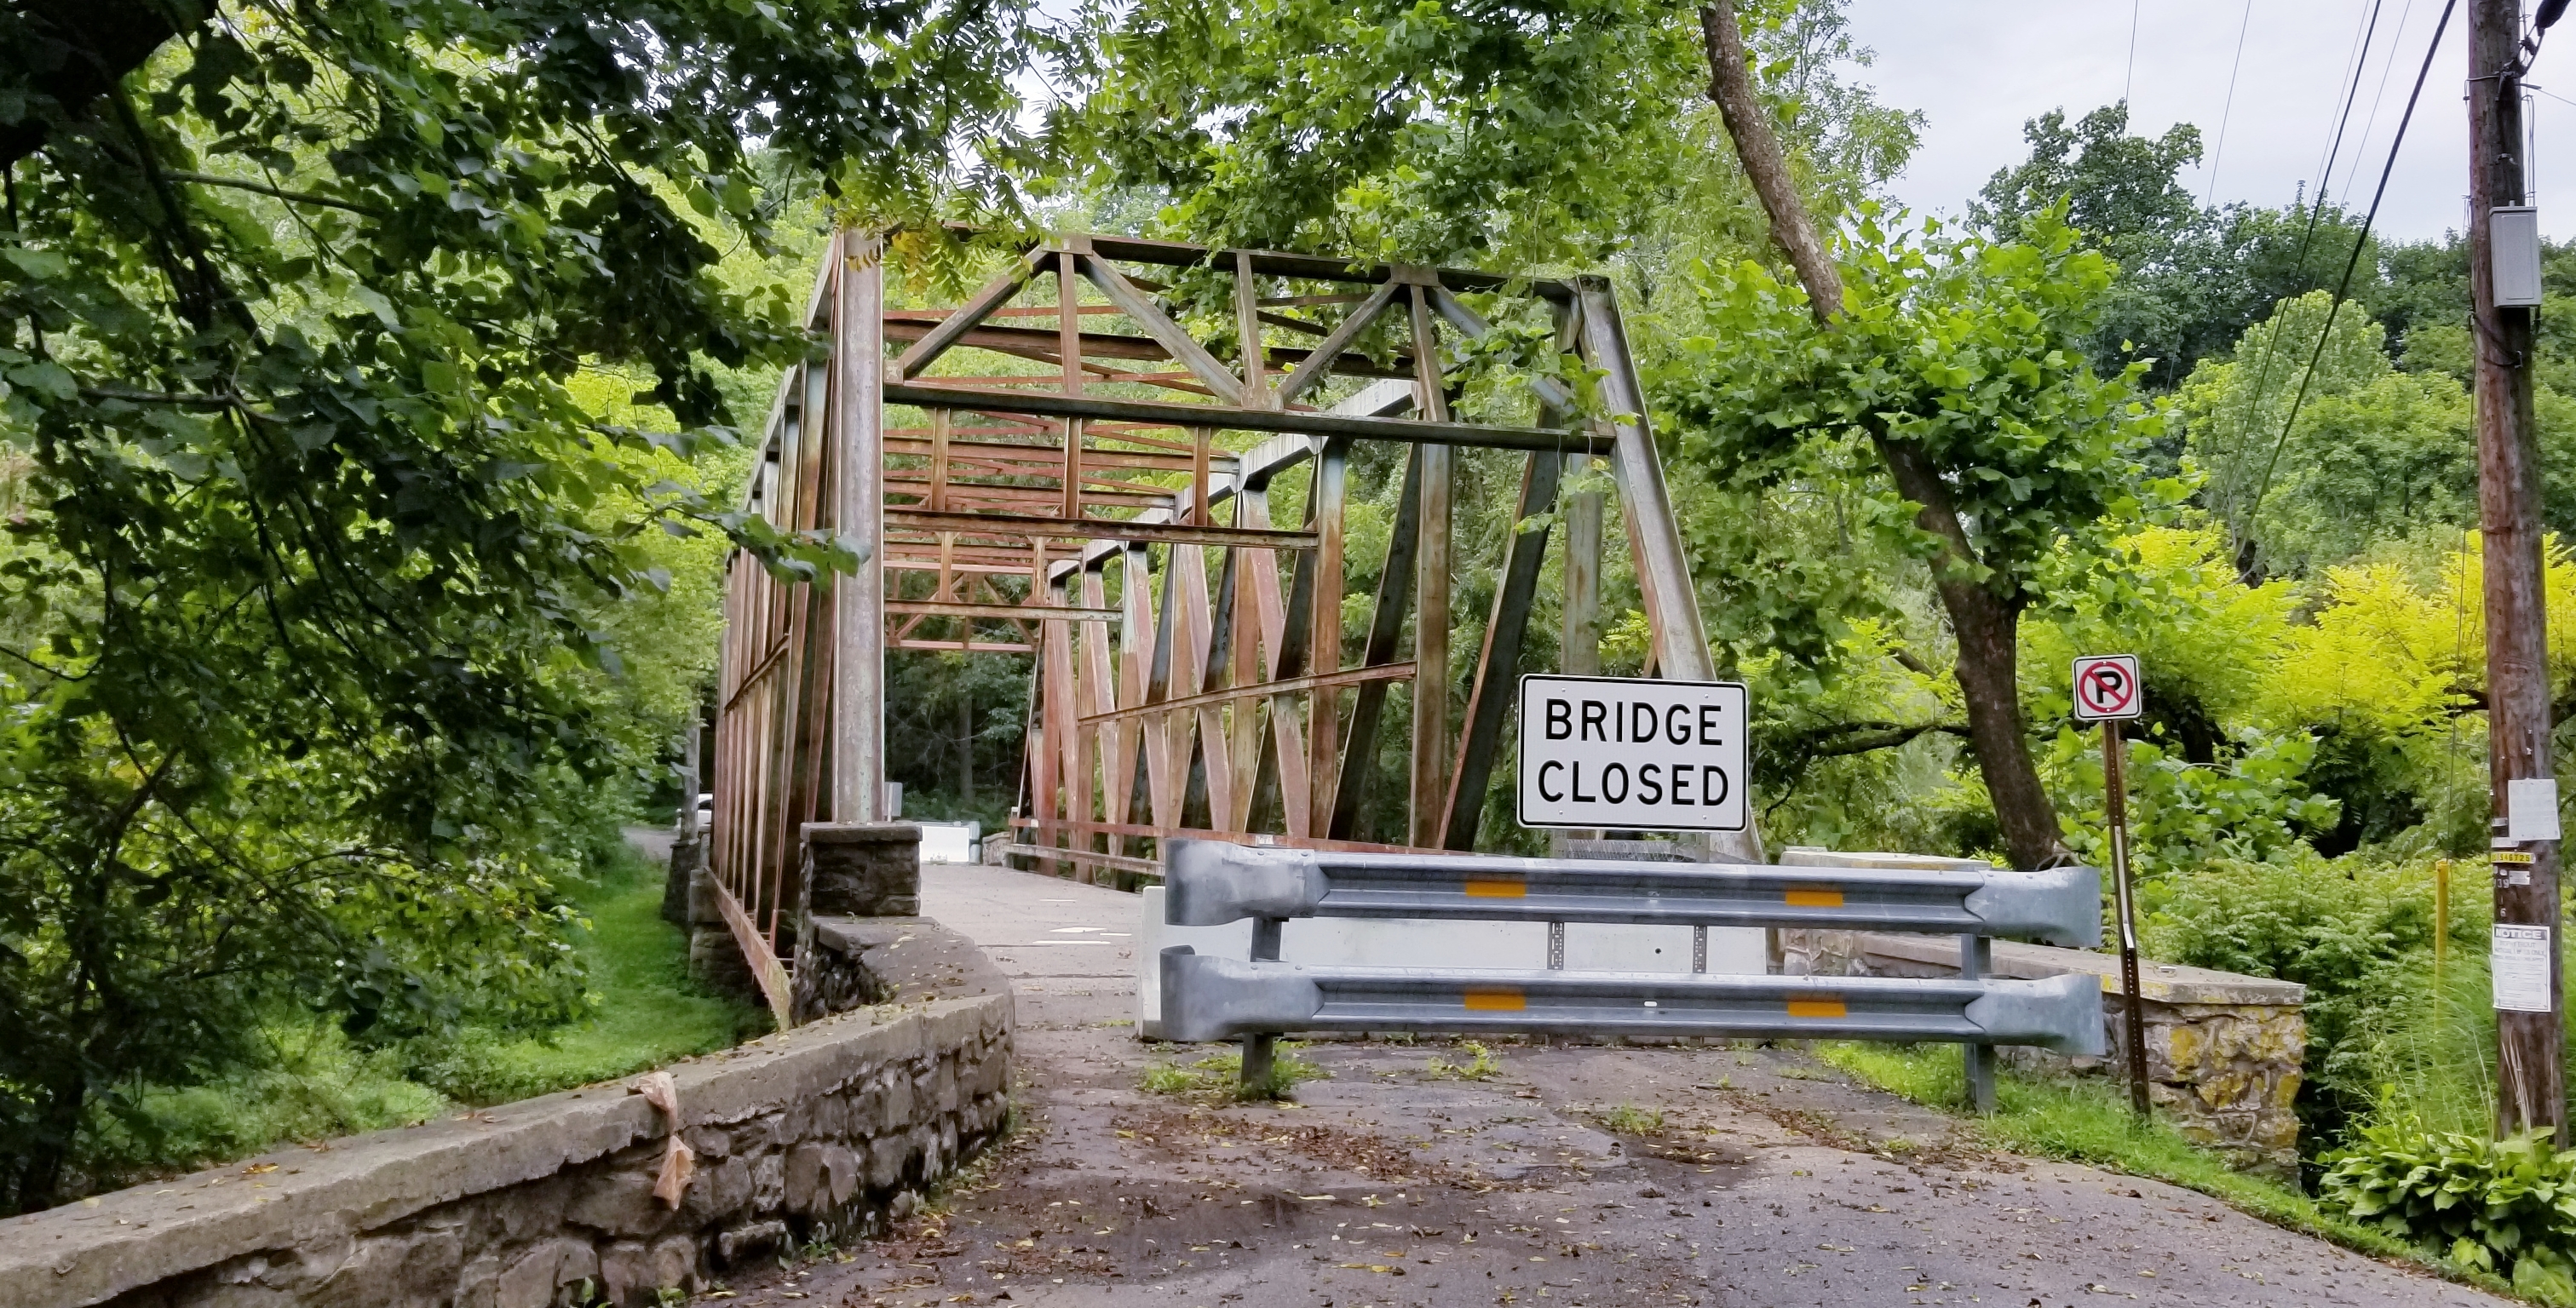 Closed Bridge